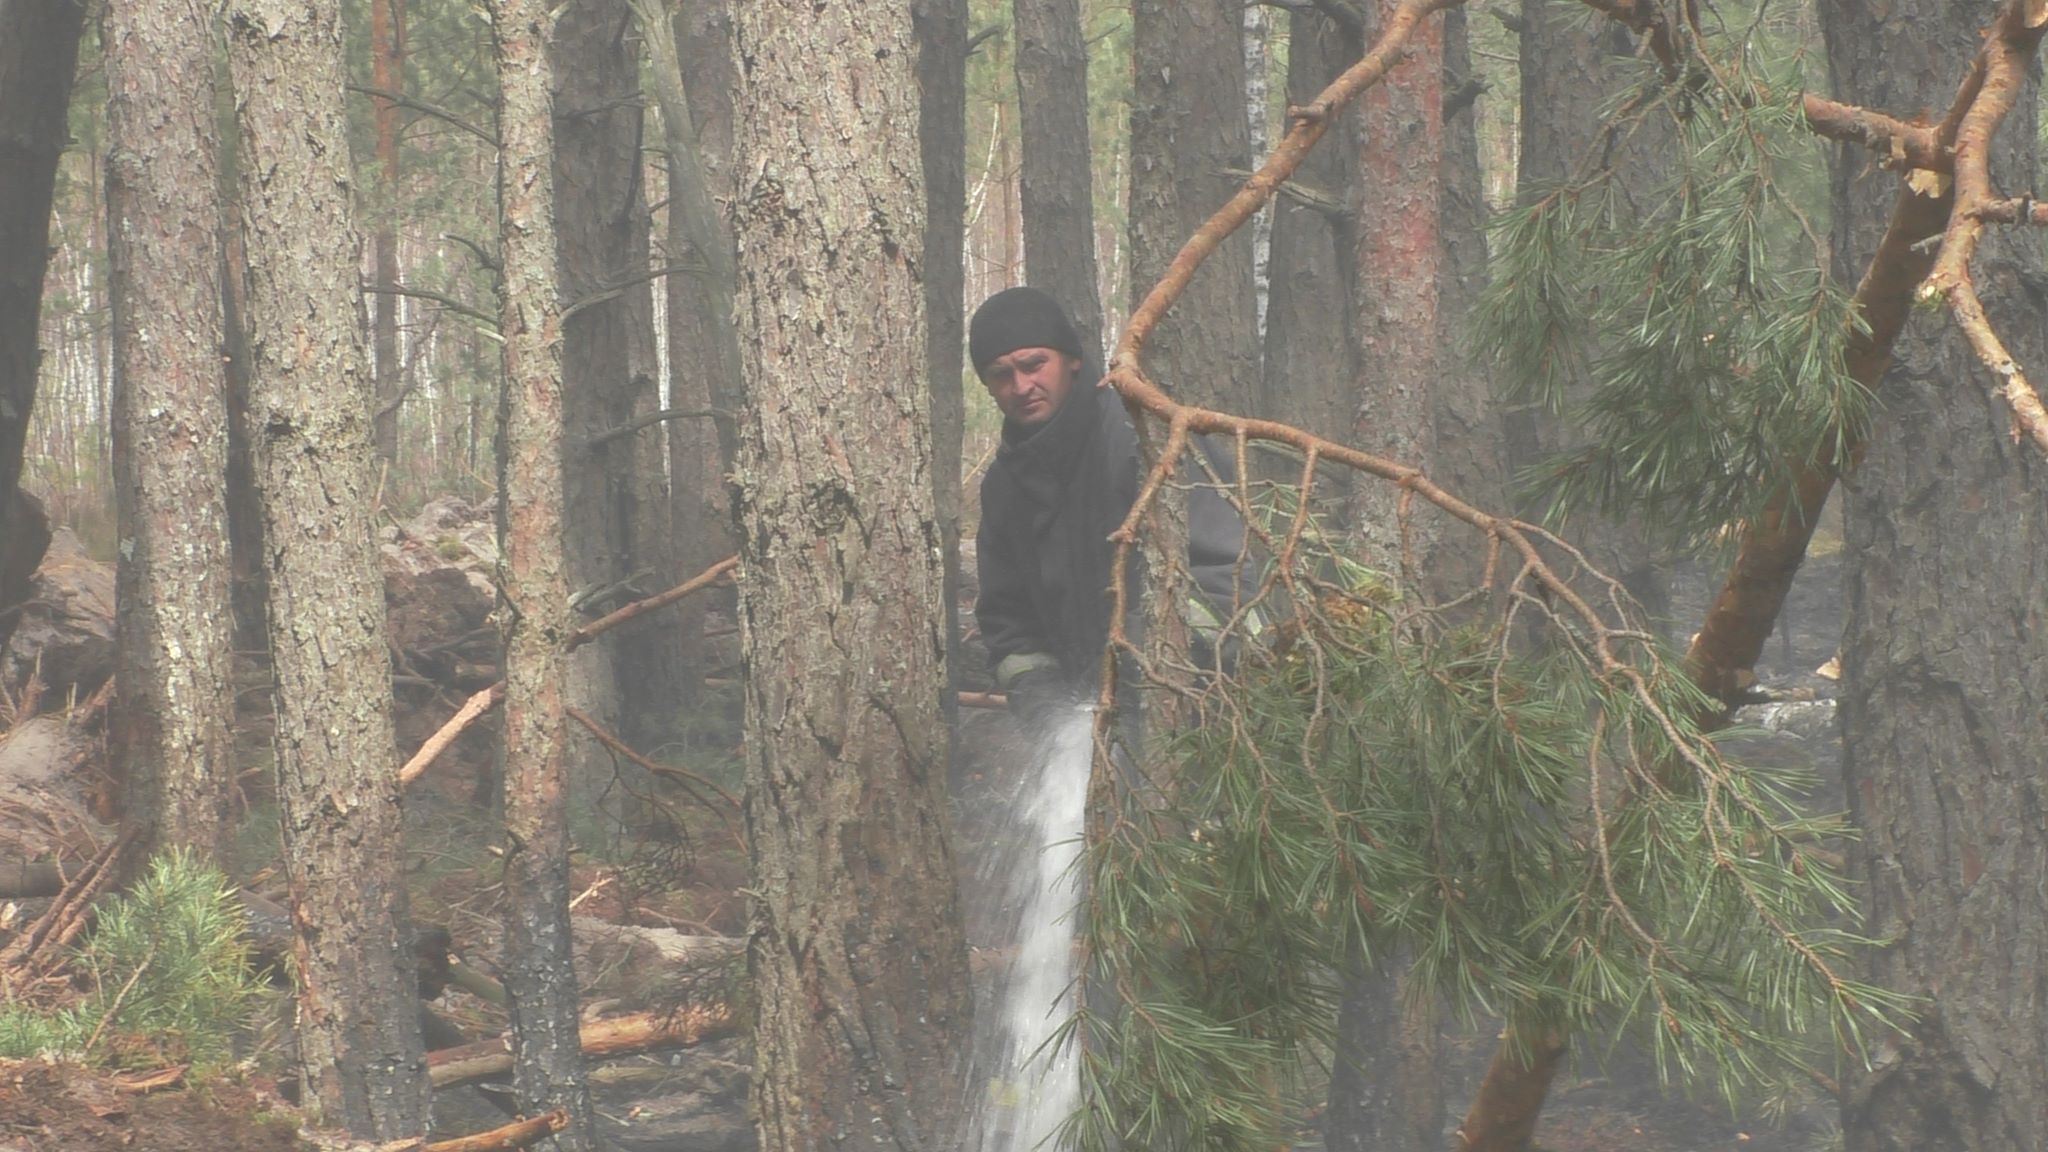 Пожары в Житомирской области. Спасатели локализуют очаг горения - фото, видео